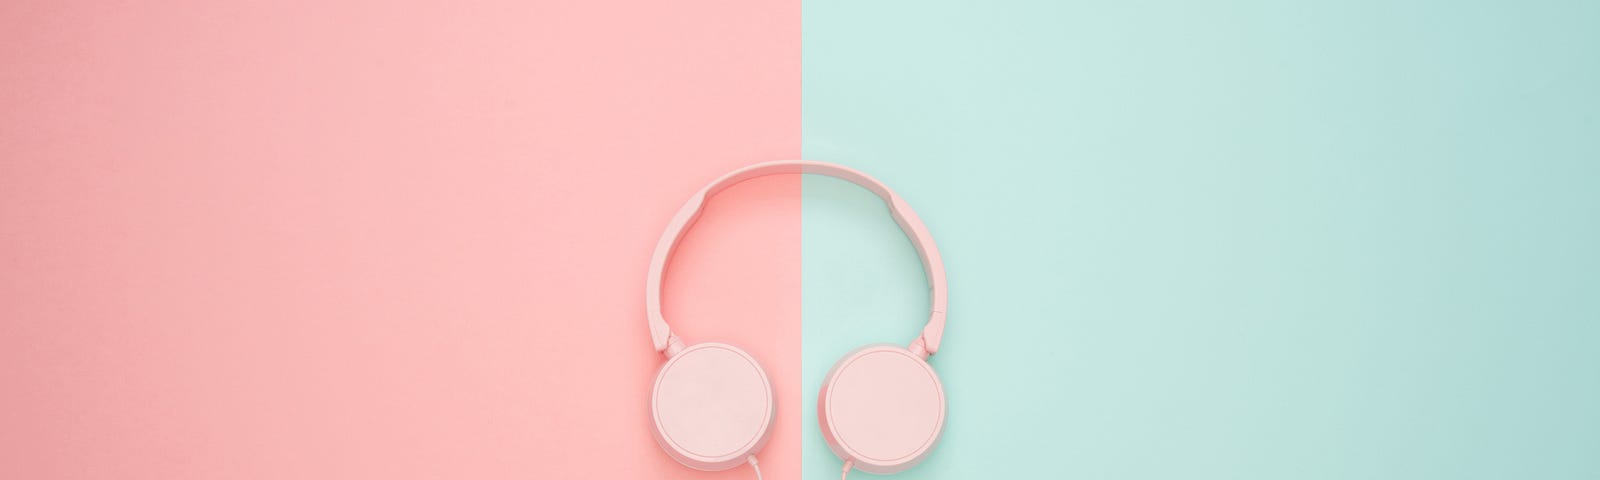 Decorative image of headphones